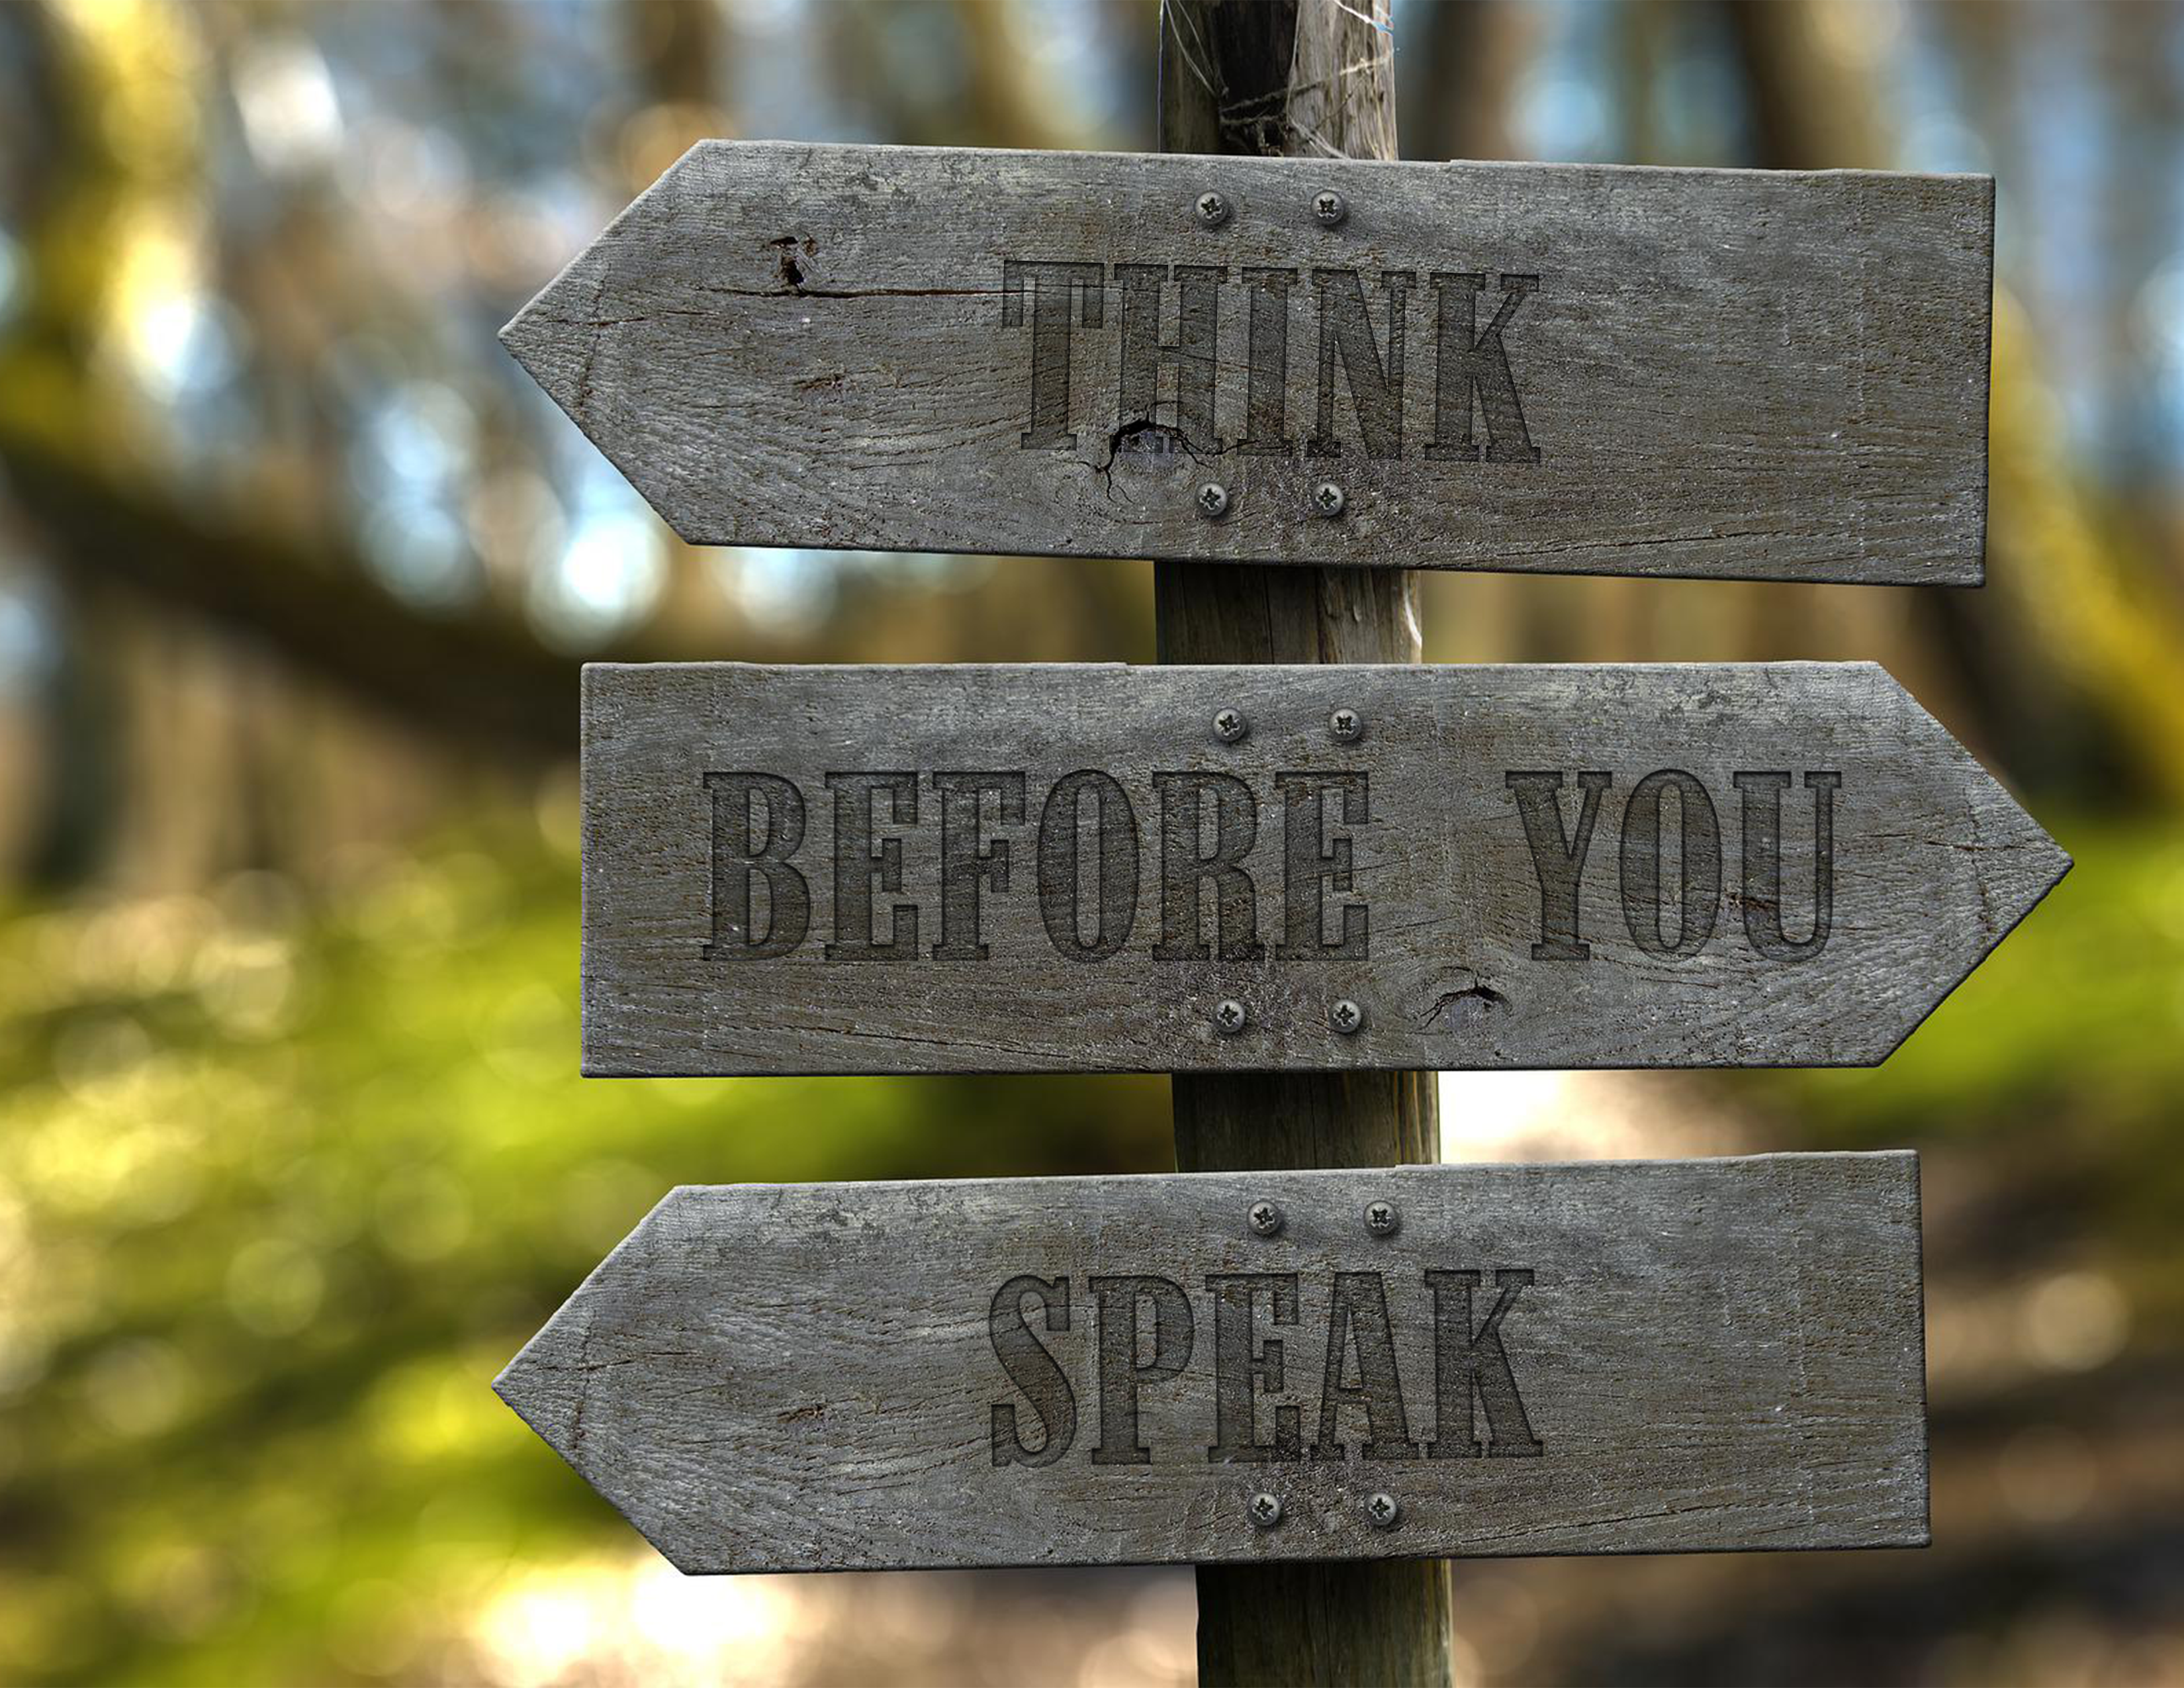 THINK – Erst Denken, dann Sprechen